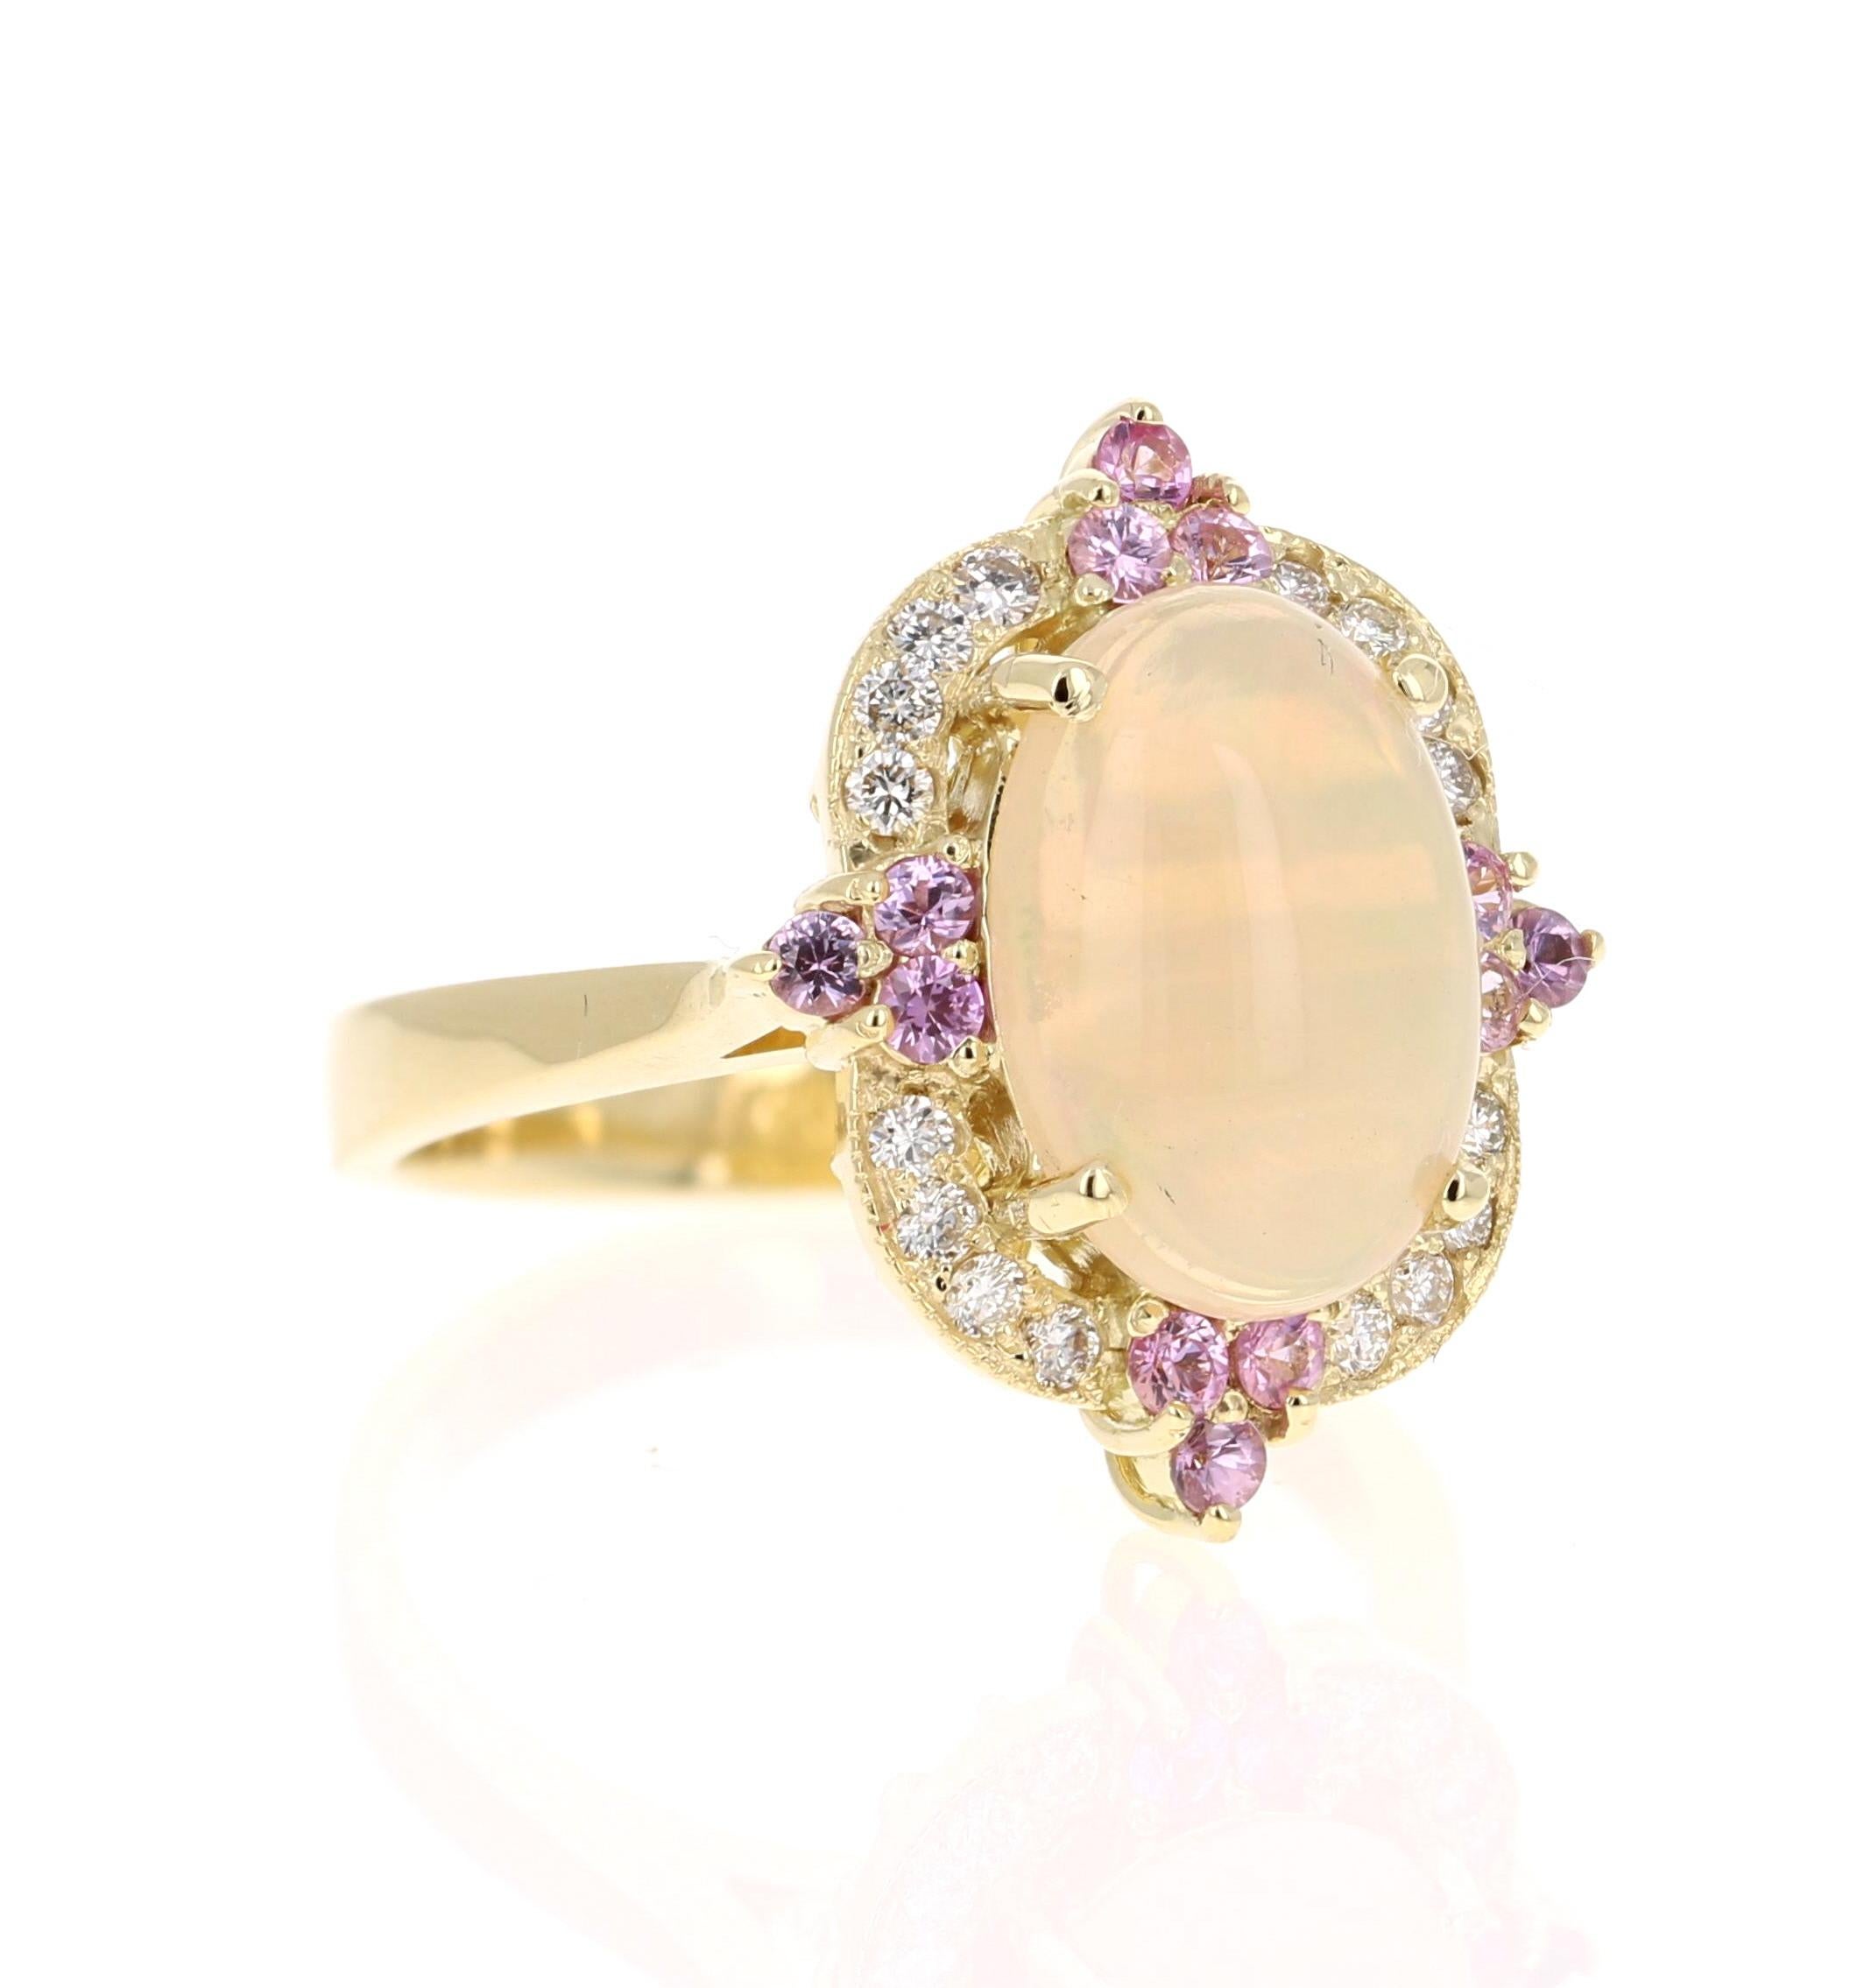 2.91 Karat Ovalschliff Opal Diamant 18 Karat Gelbgold Ring

Der Oval Cut Opal in diesem Ring wiegt 2,30 Karat und die Abmessungen des Opals sind 8 mm x 12 mm. Der Opal ist von 4 rosafarbenen Saphiren mit einem Gewicht von 0,37 Karat und 16 Diamanten